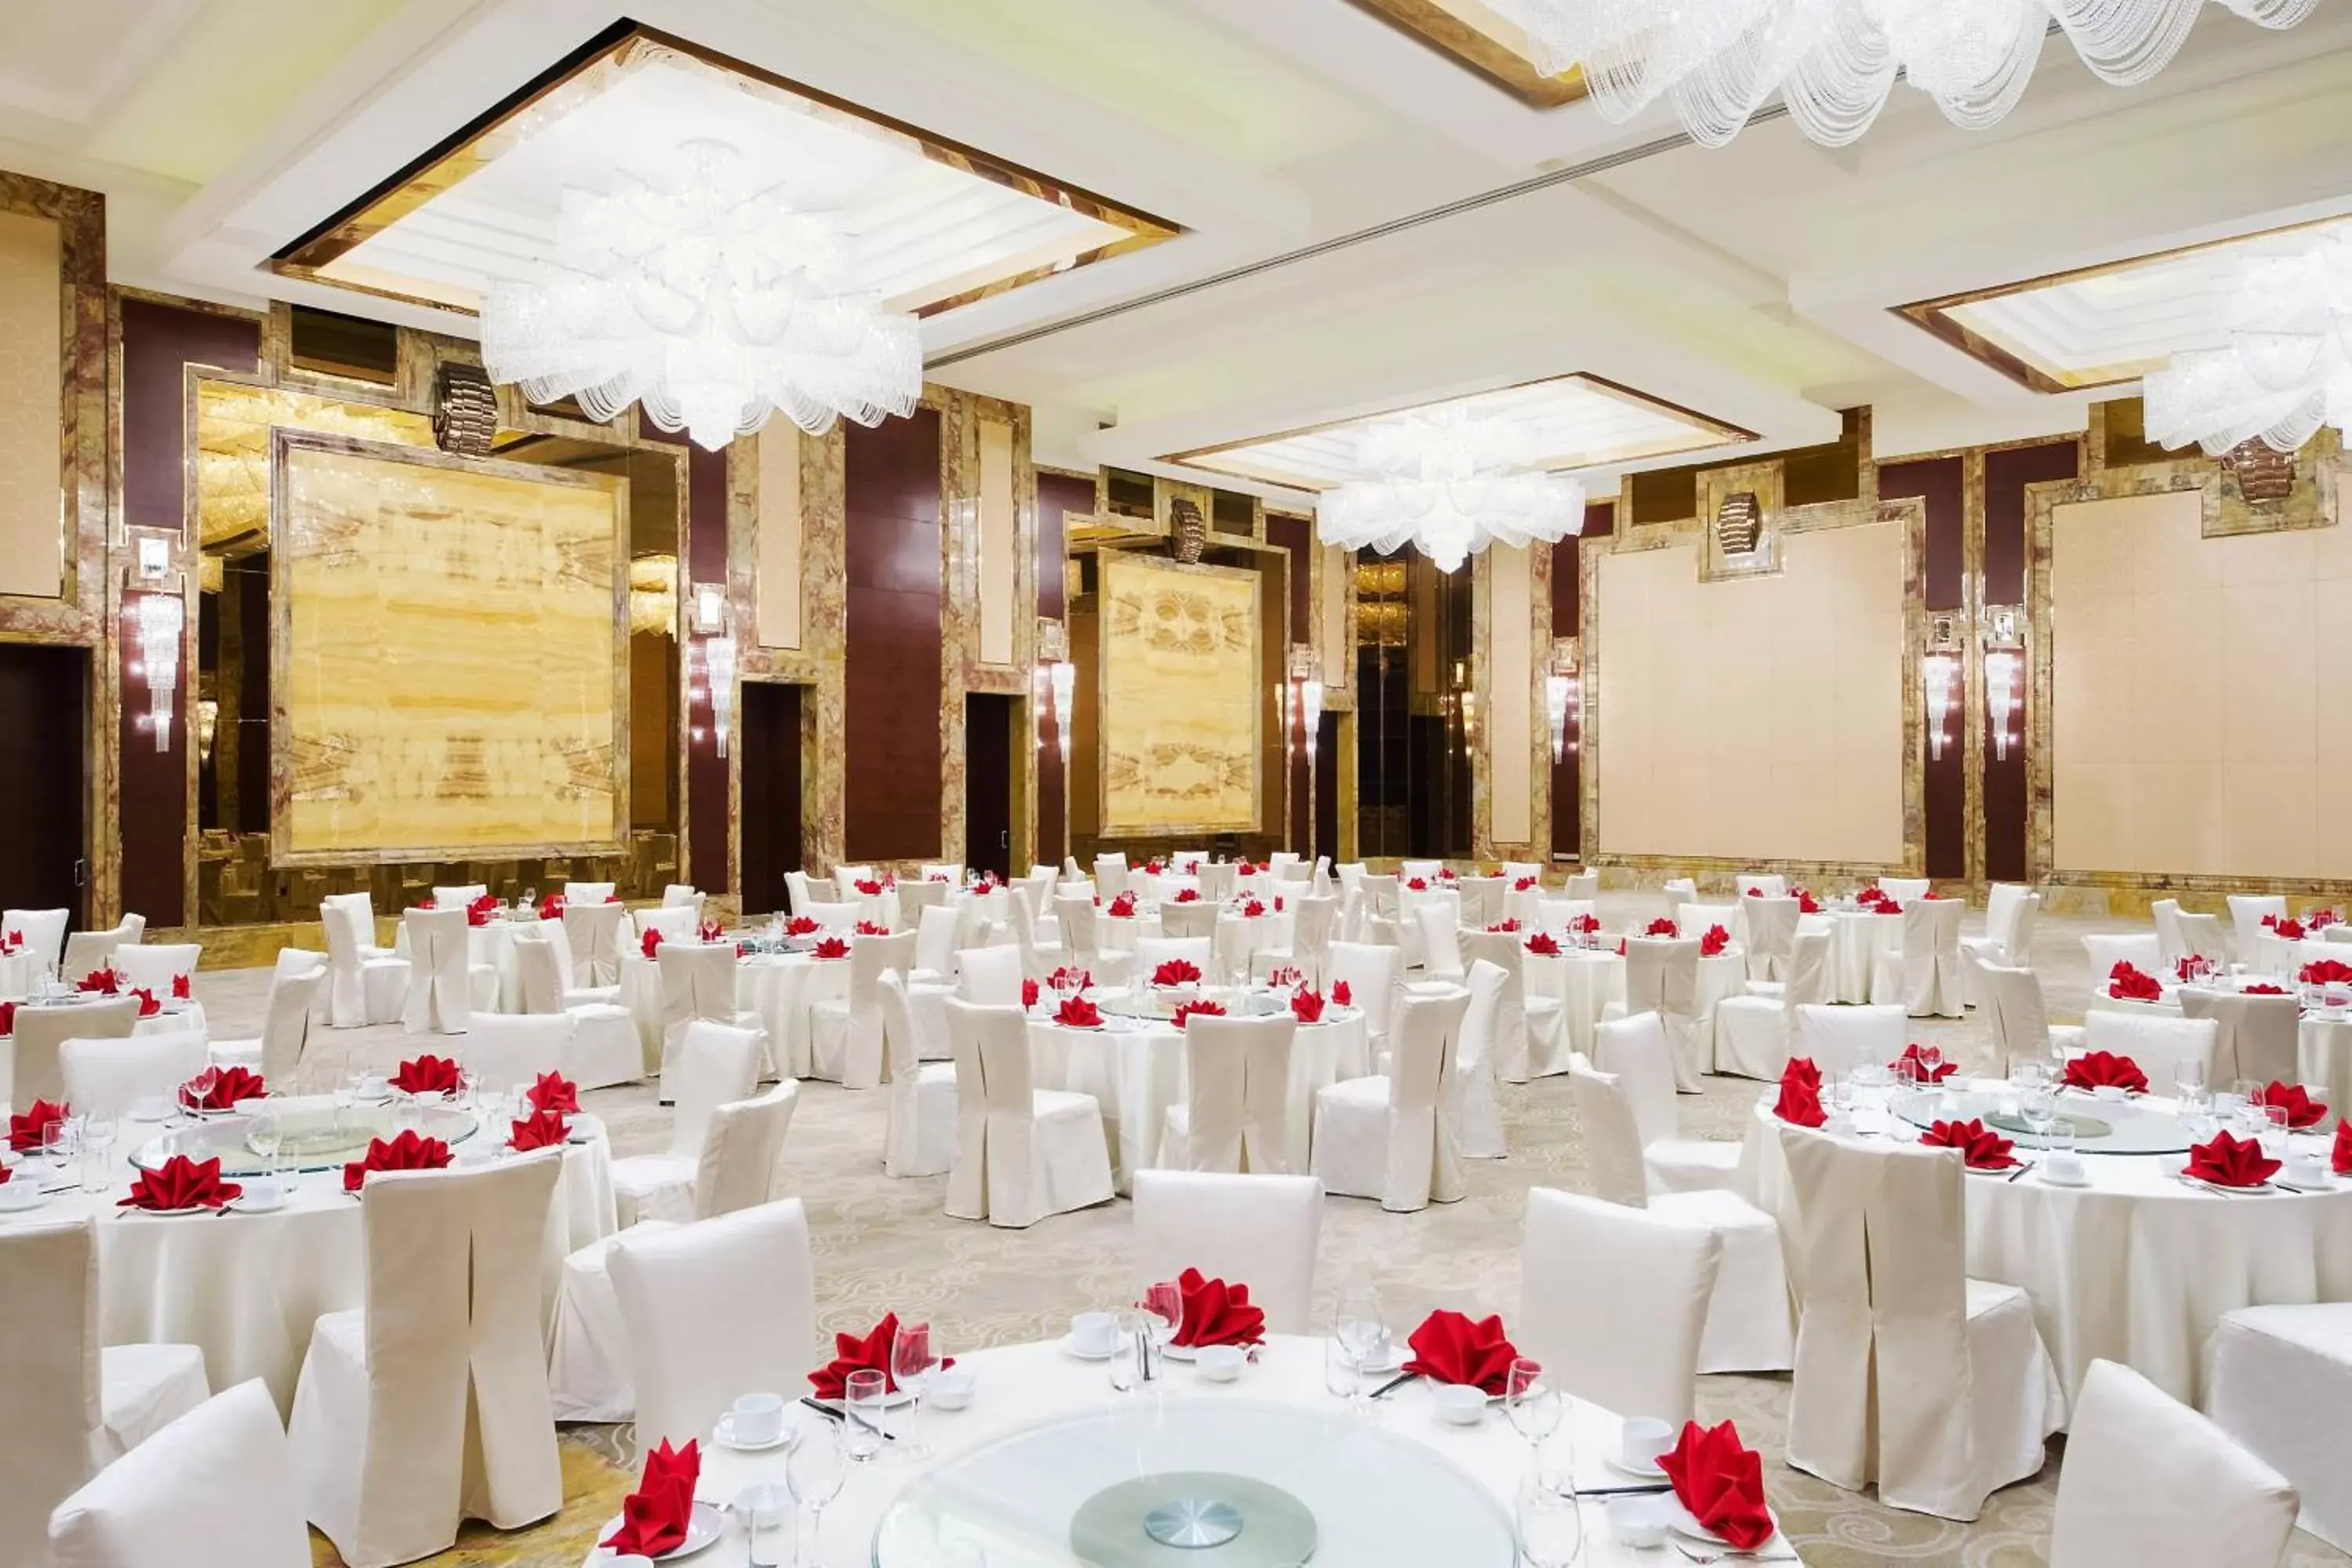 Meeting/conference room, Banquet Facilities in Sheraton Qingdao Jiaozhou Hotel